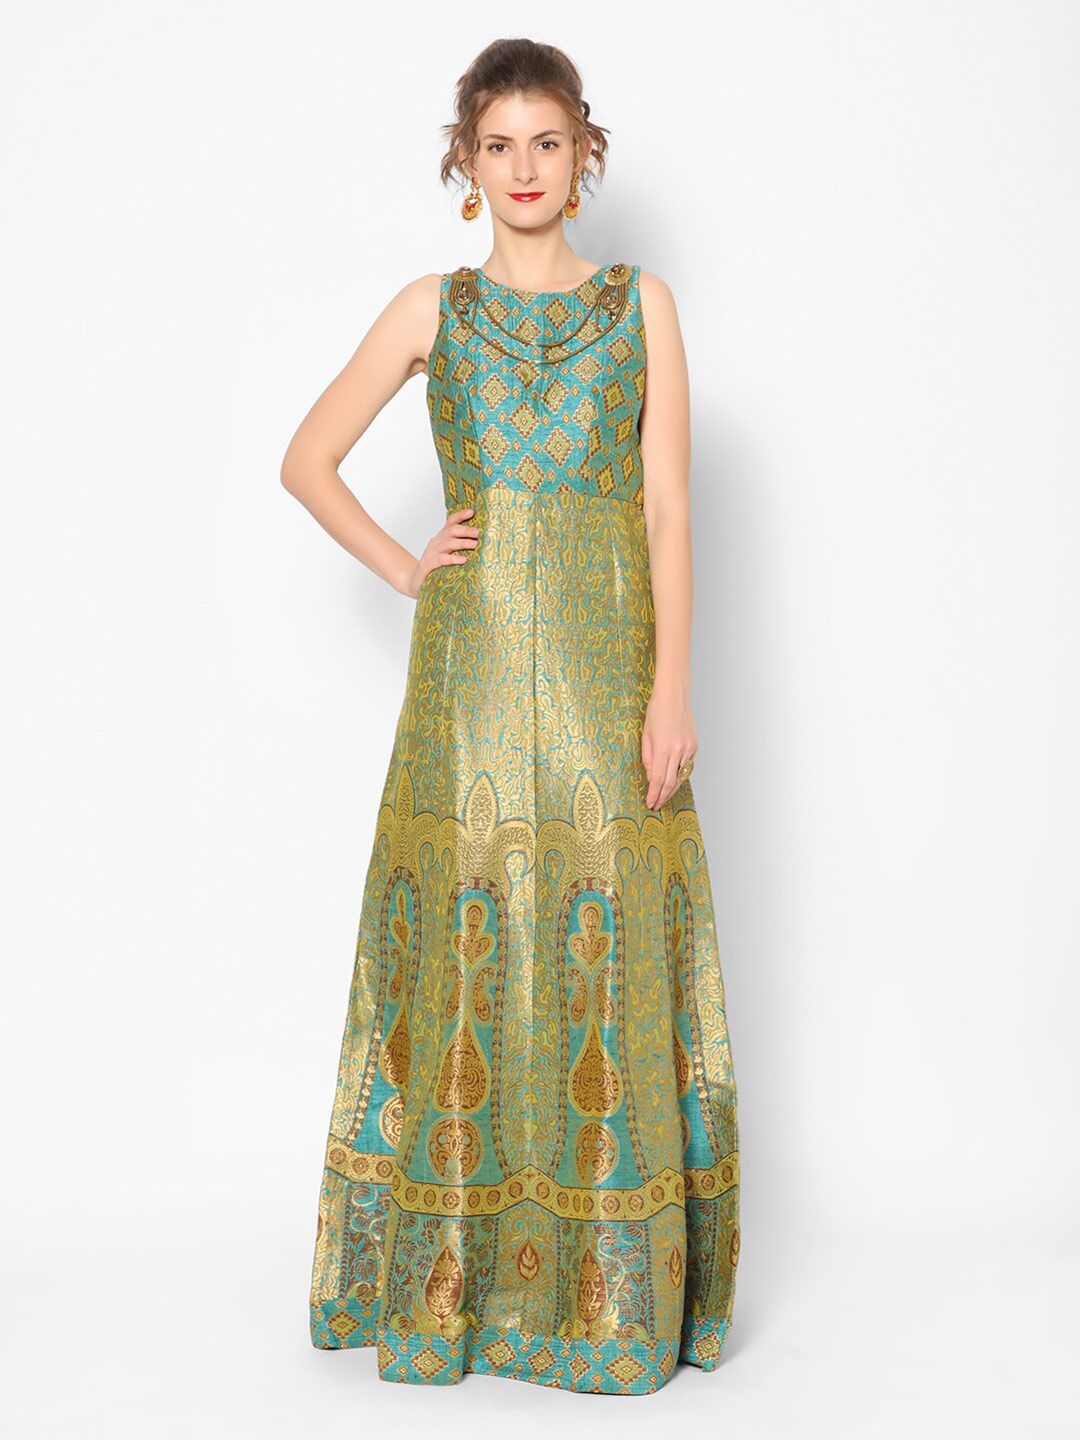 Kiya Ethnic Motifs Jacquard Ethnic Maxi Dress Price in India